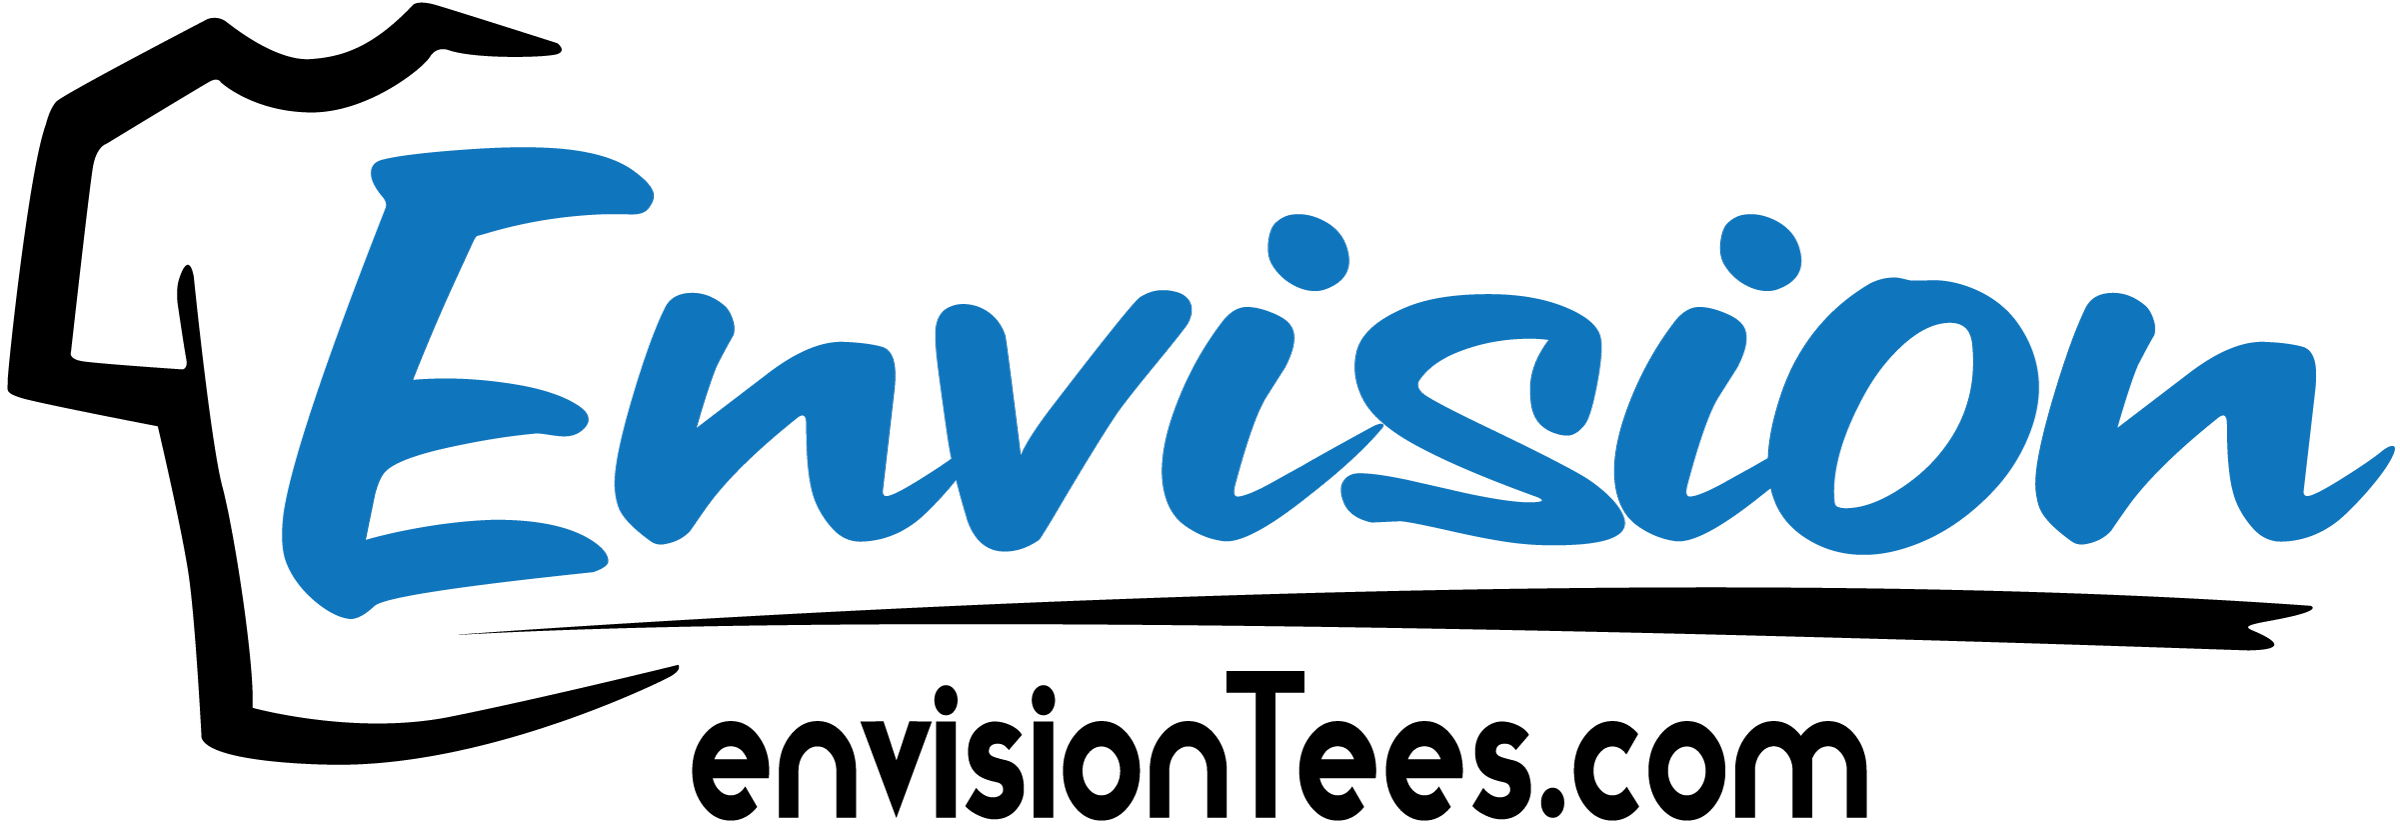 Envision Logo - EnvisionTees.com